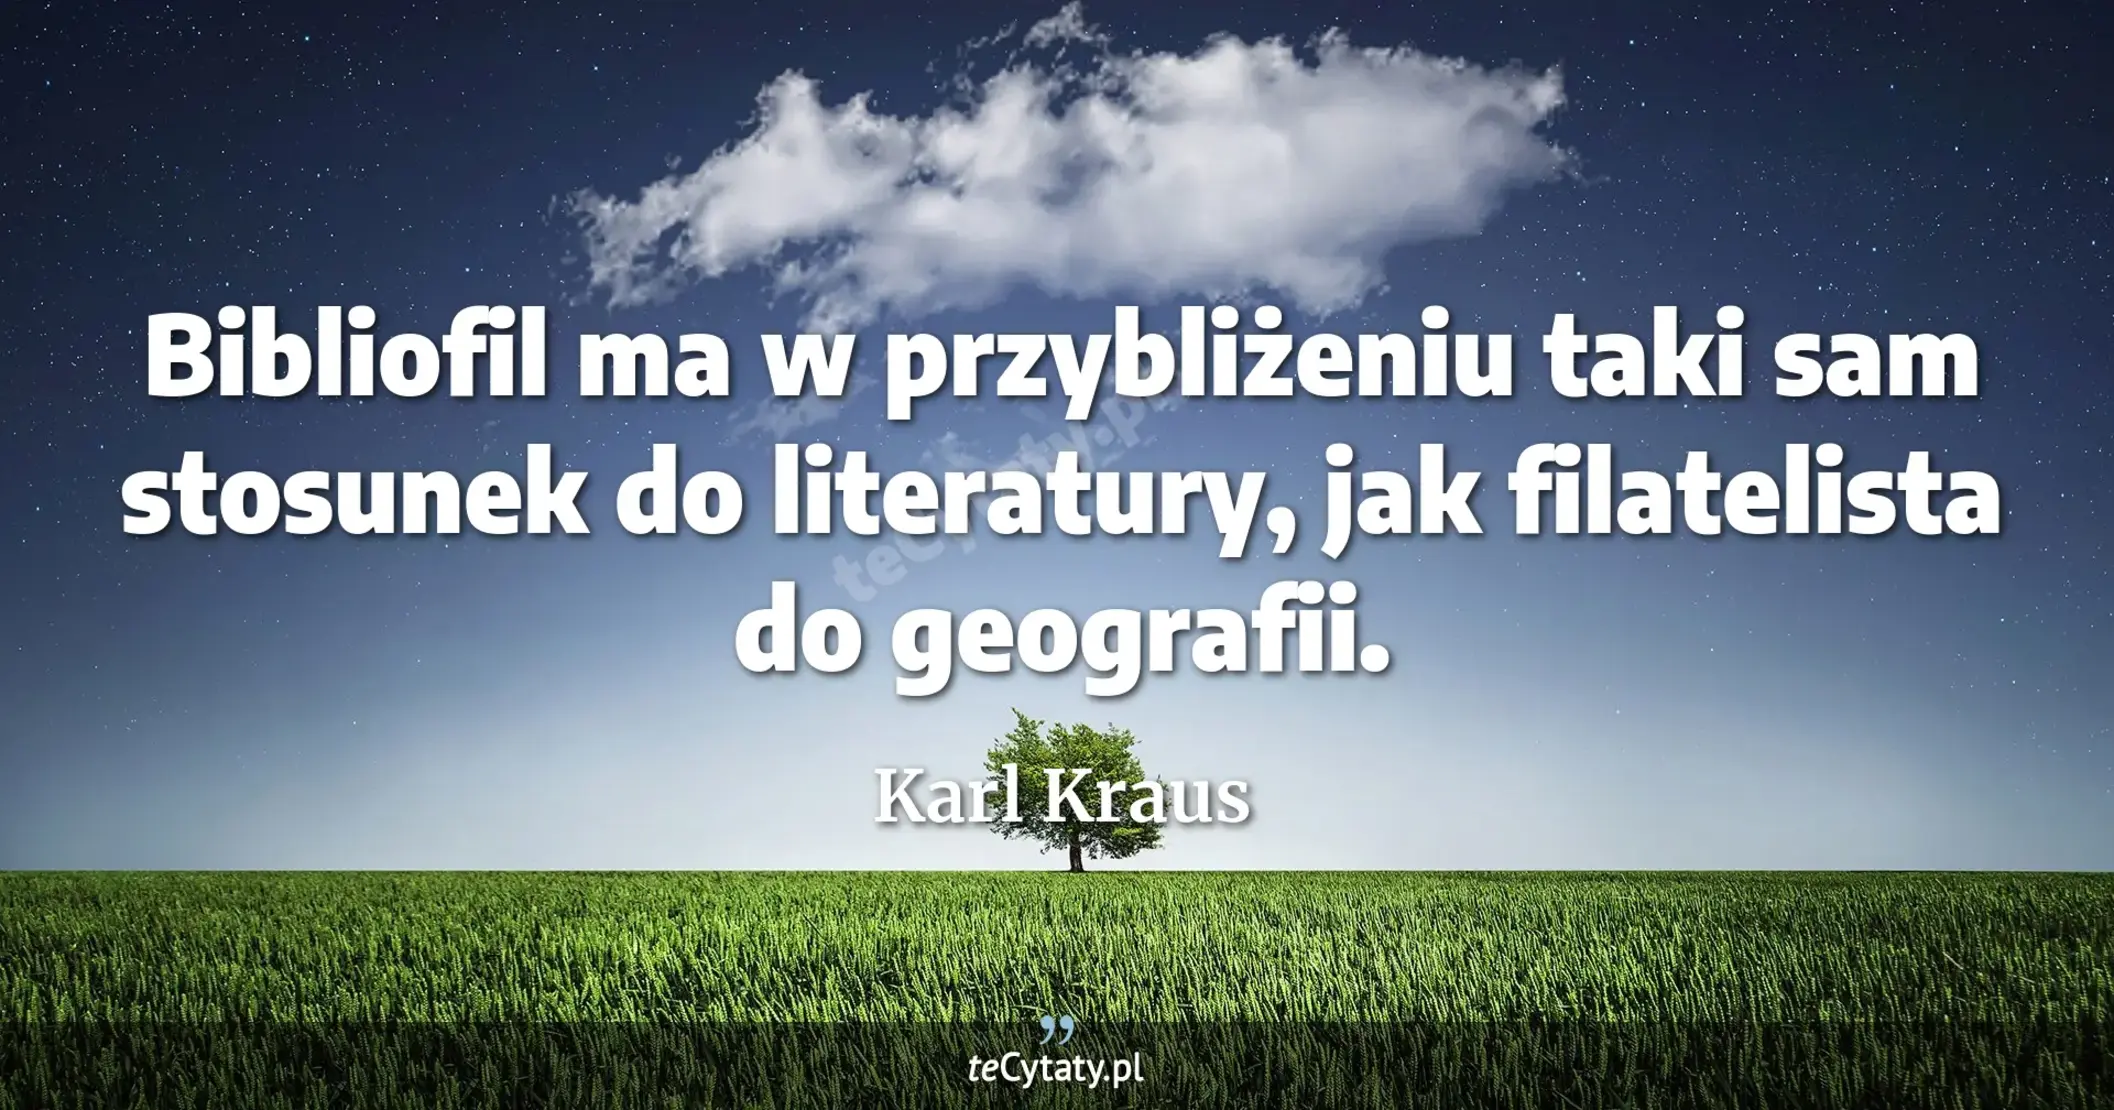 Bibliofil ma w przybliżeniu taki sam stosunek do literatury, jak filatelista do geografii. - Karl Kraus